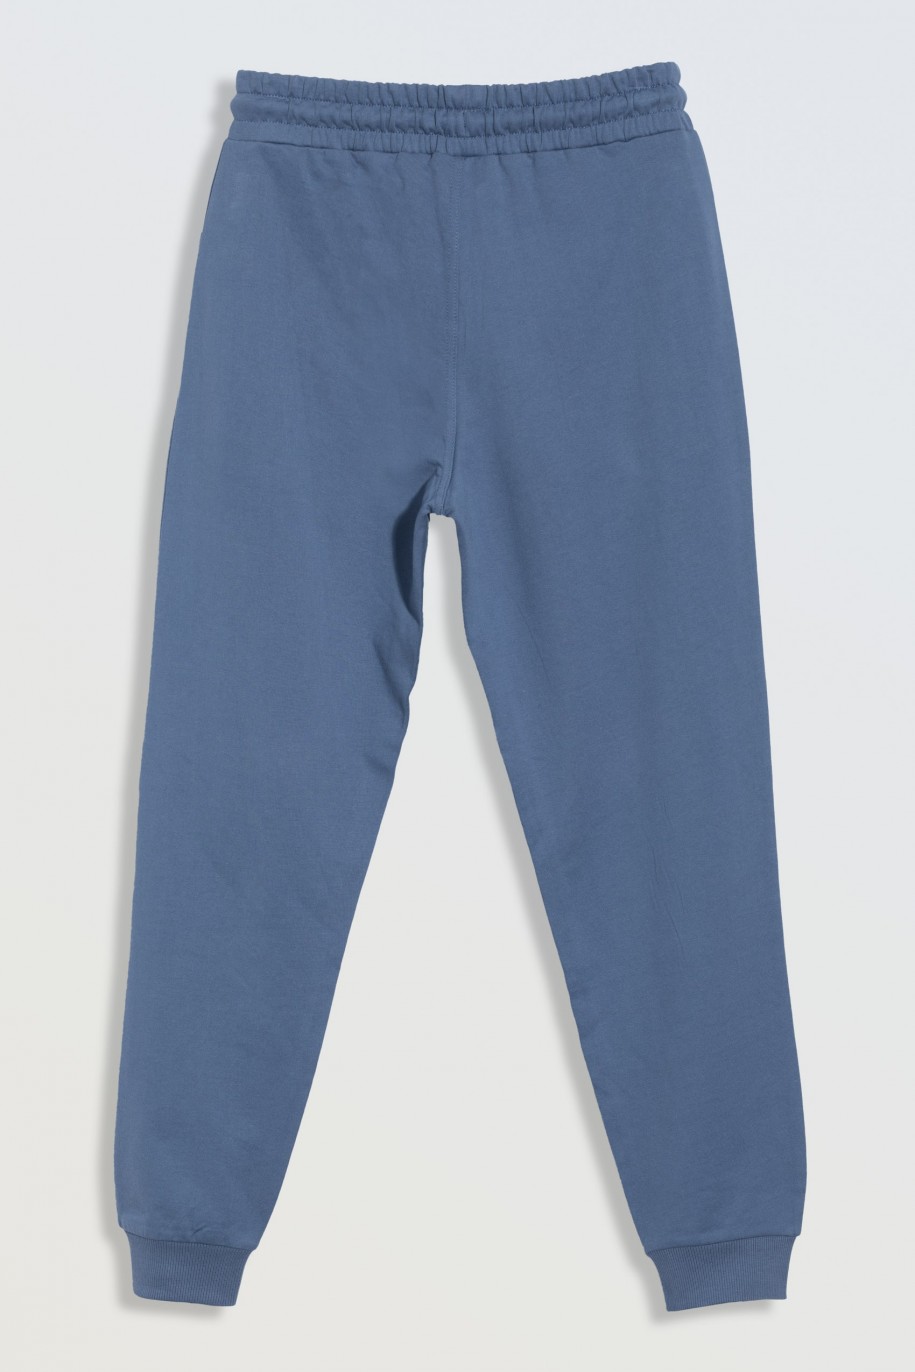 Niebieskie spodnie dresowe z kieszeniami zapinanymi na zamek - 47162